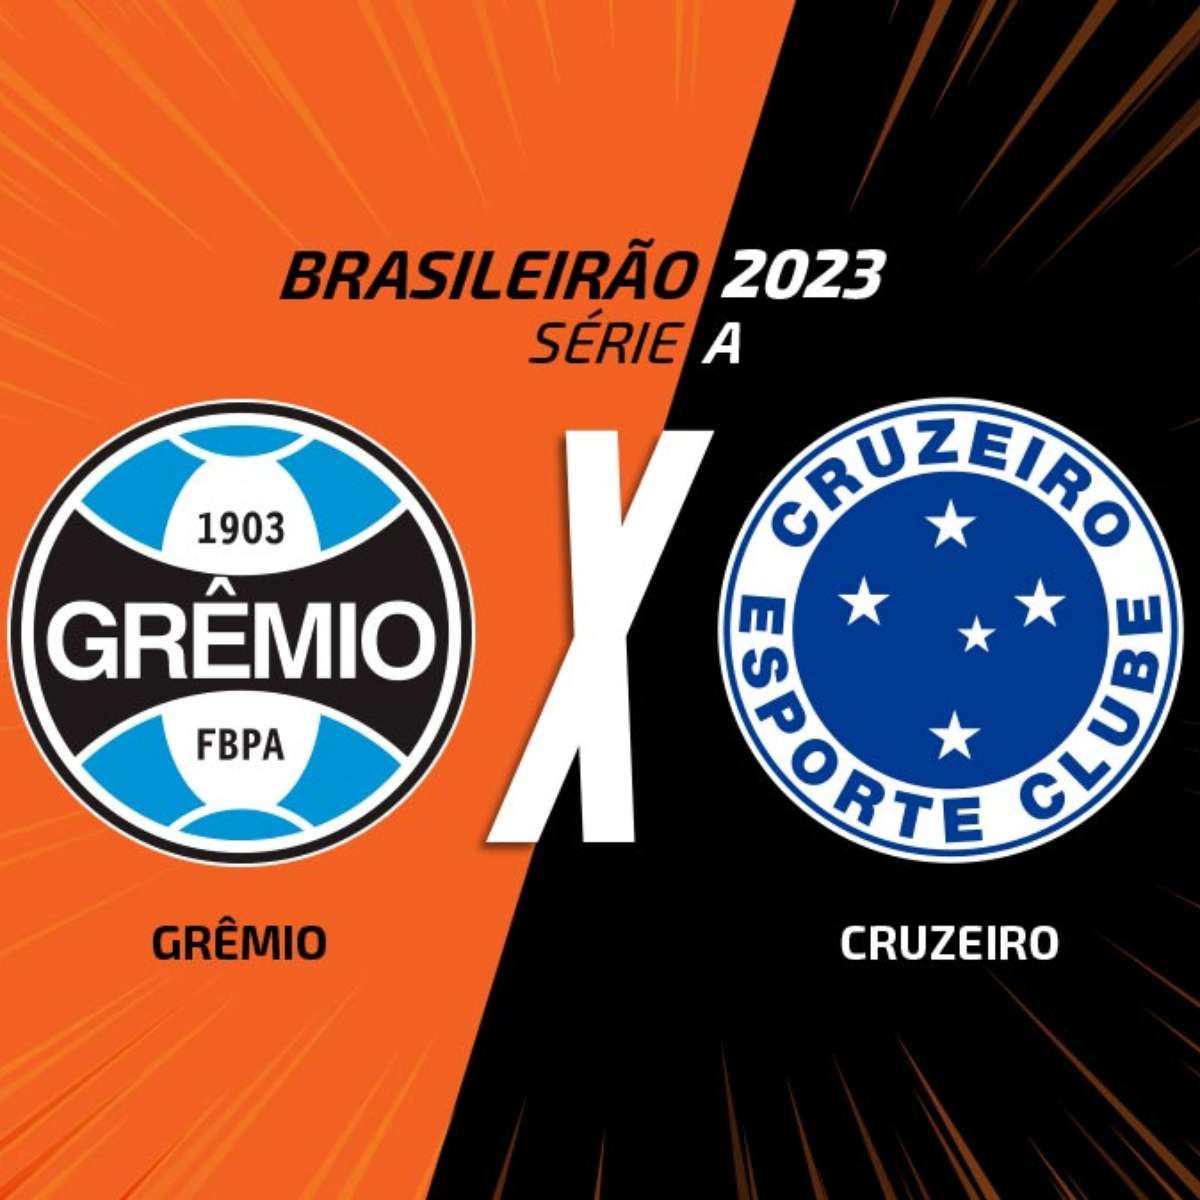 Gremio vs. Brusque: A Clash of Giants in Brazilian Football